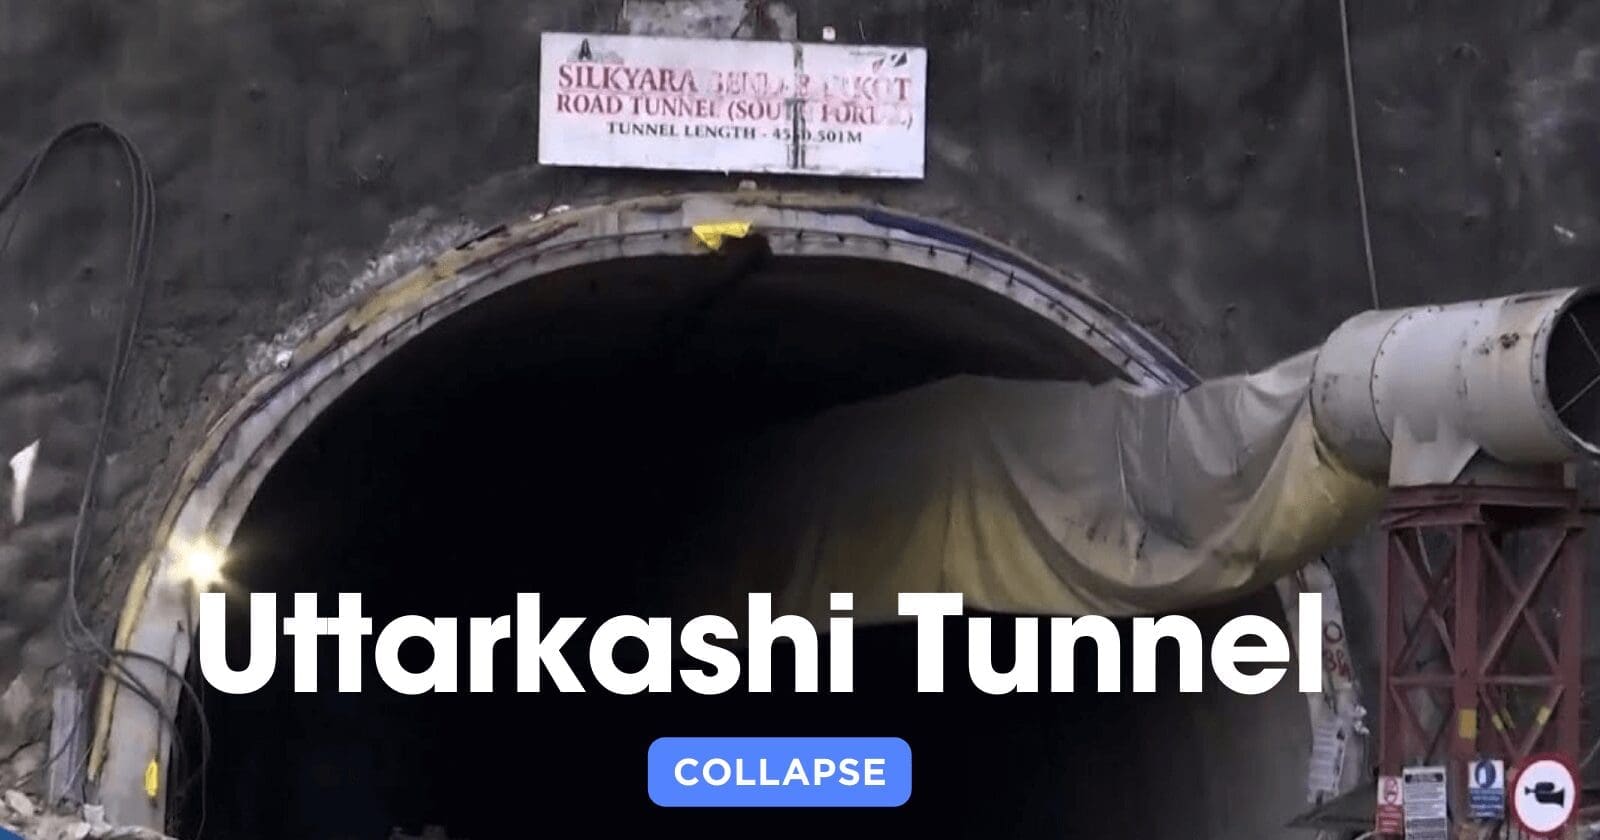 uttarkashi-tunnel-collapse-community-united-hope-resilience